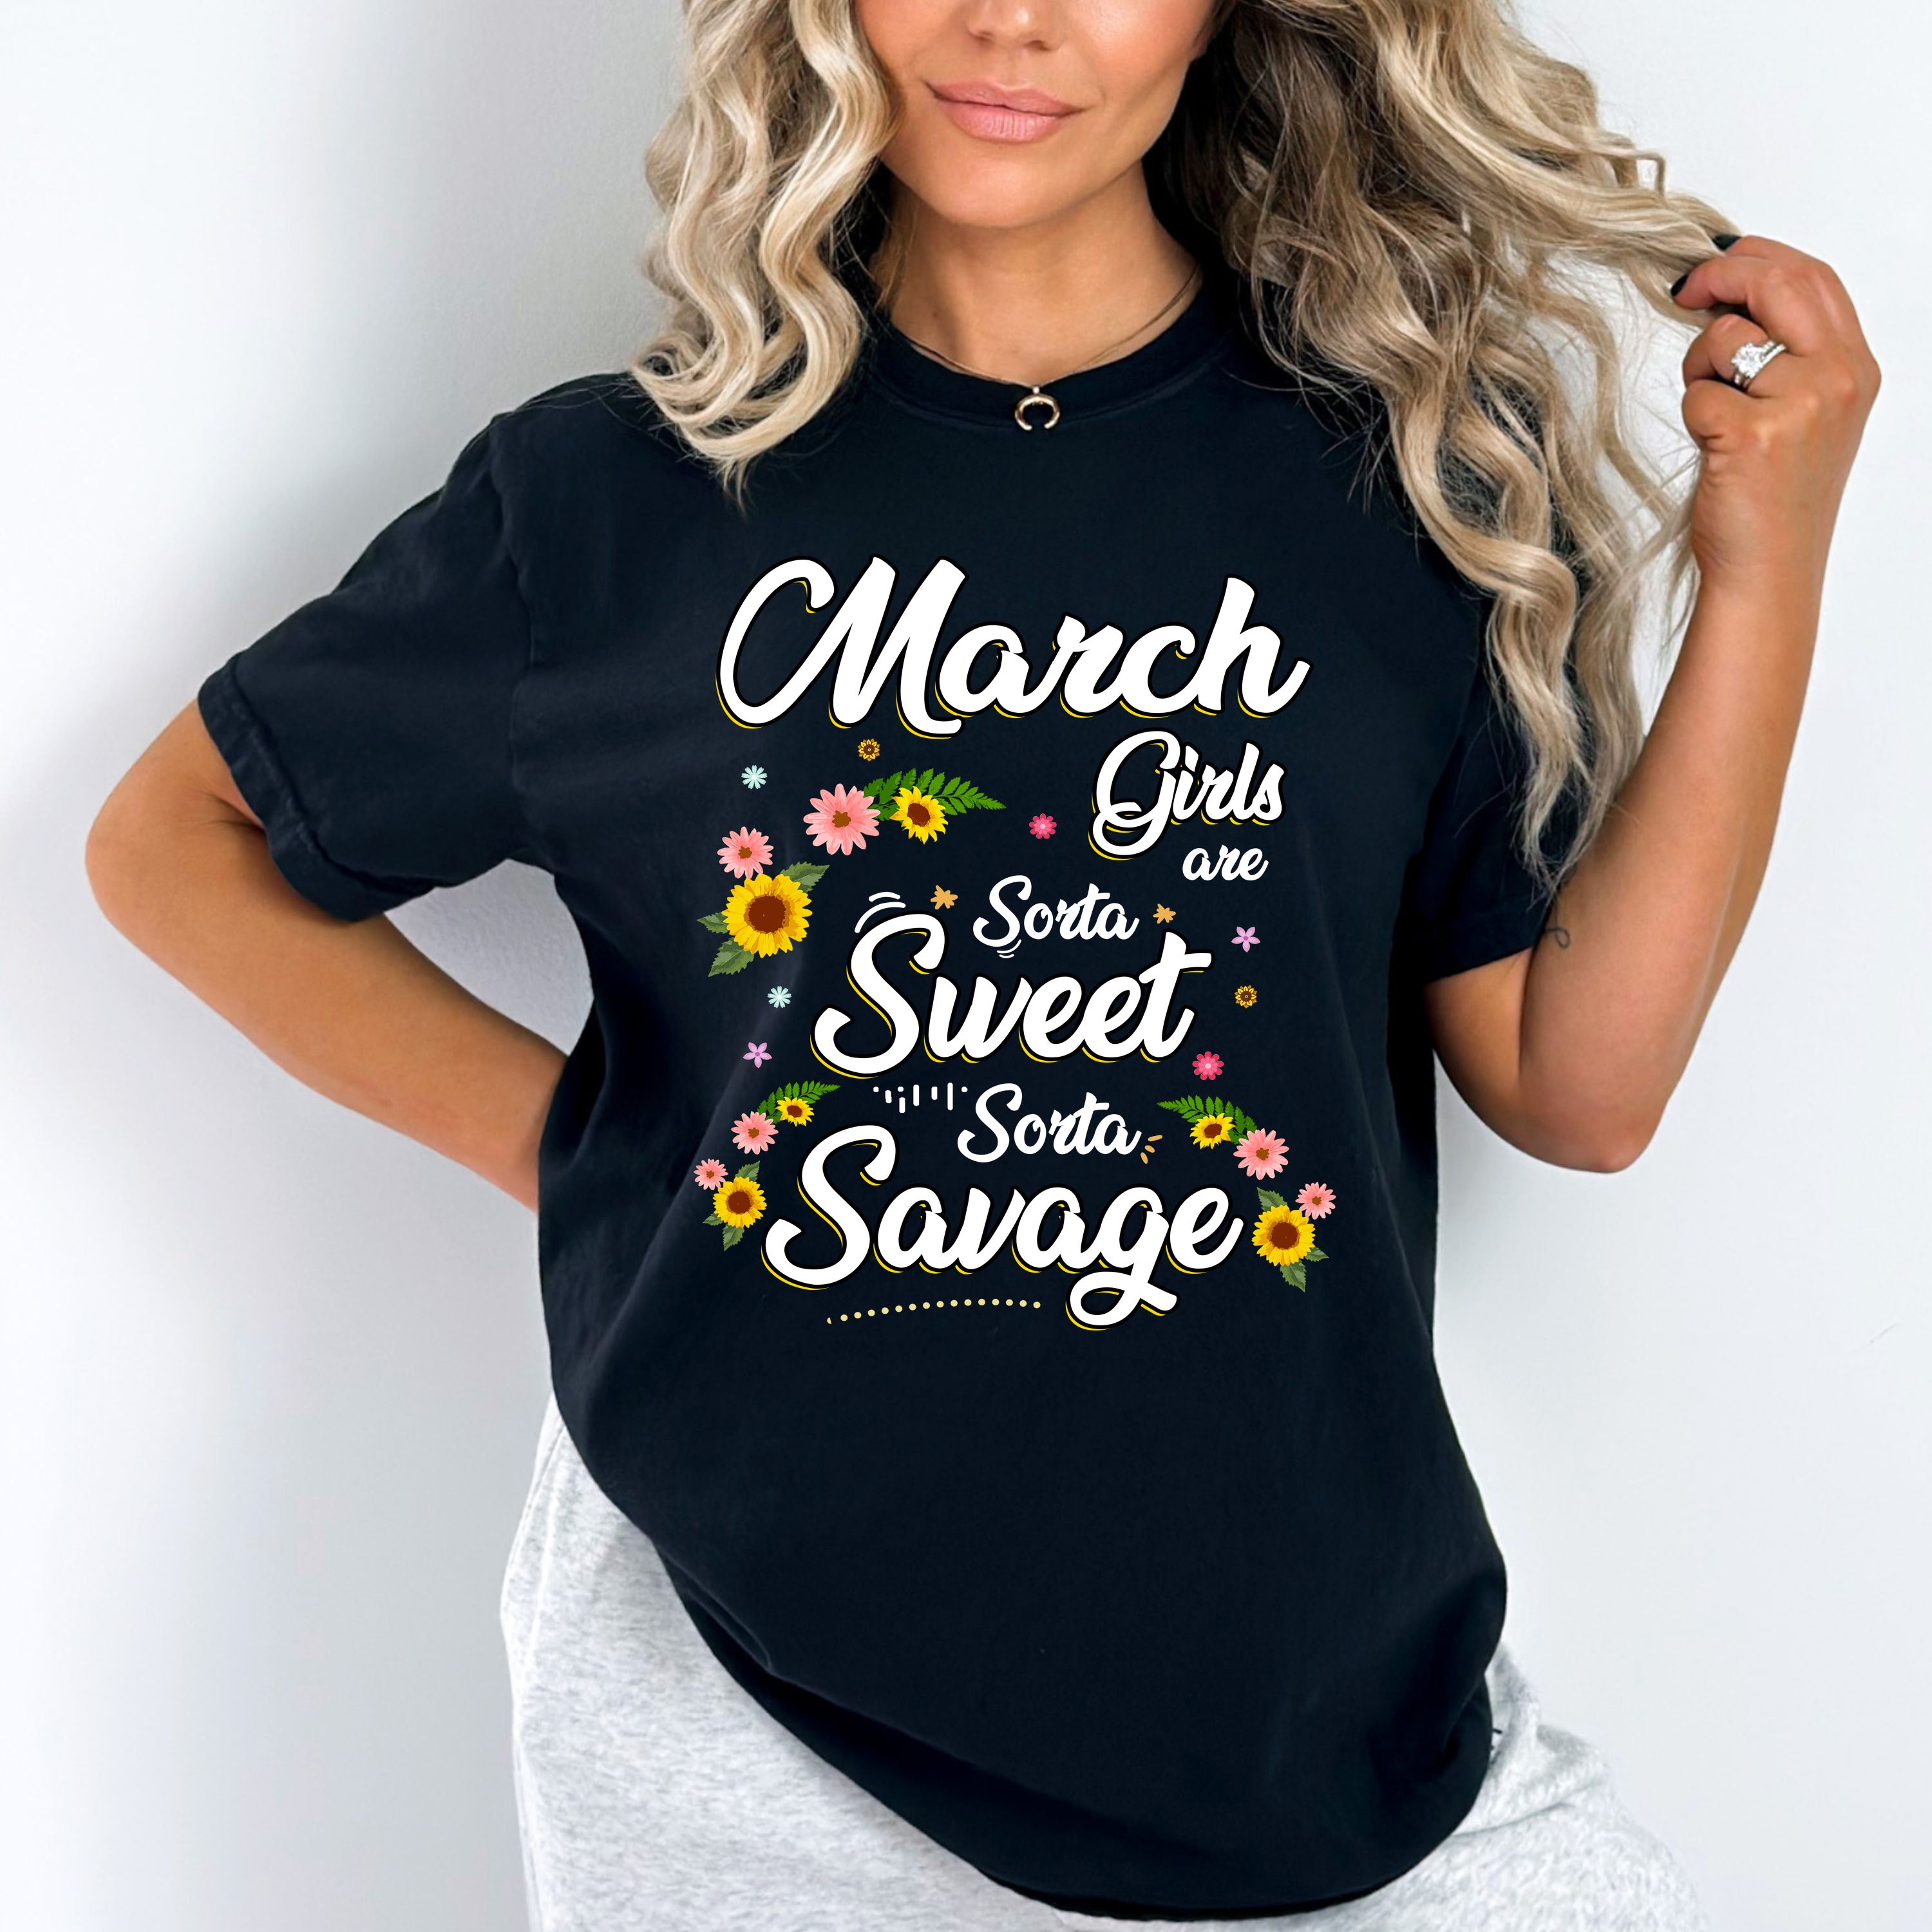 "March Girls Are Sorta Sweet Sorta Savage"